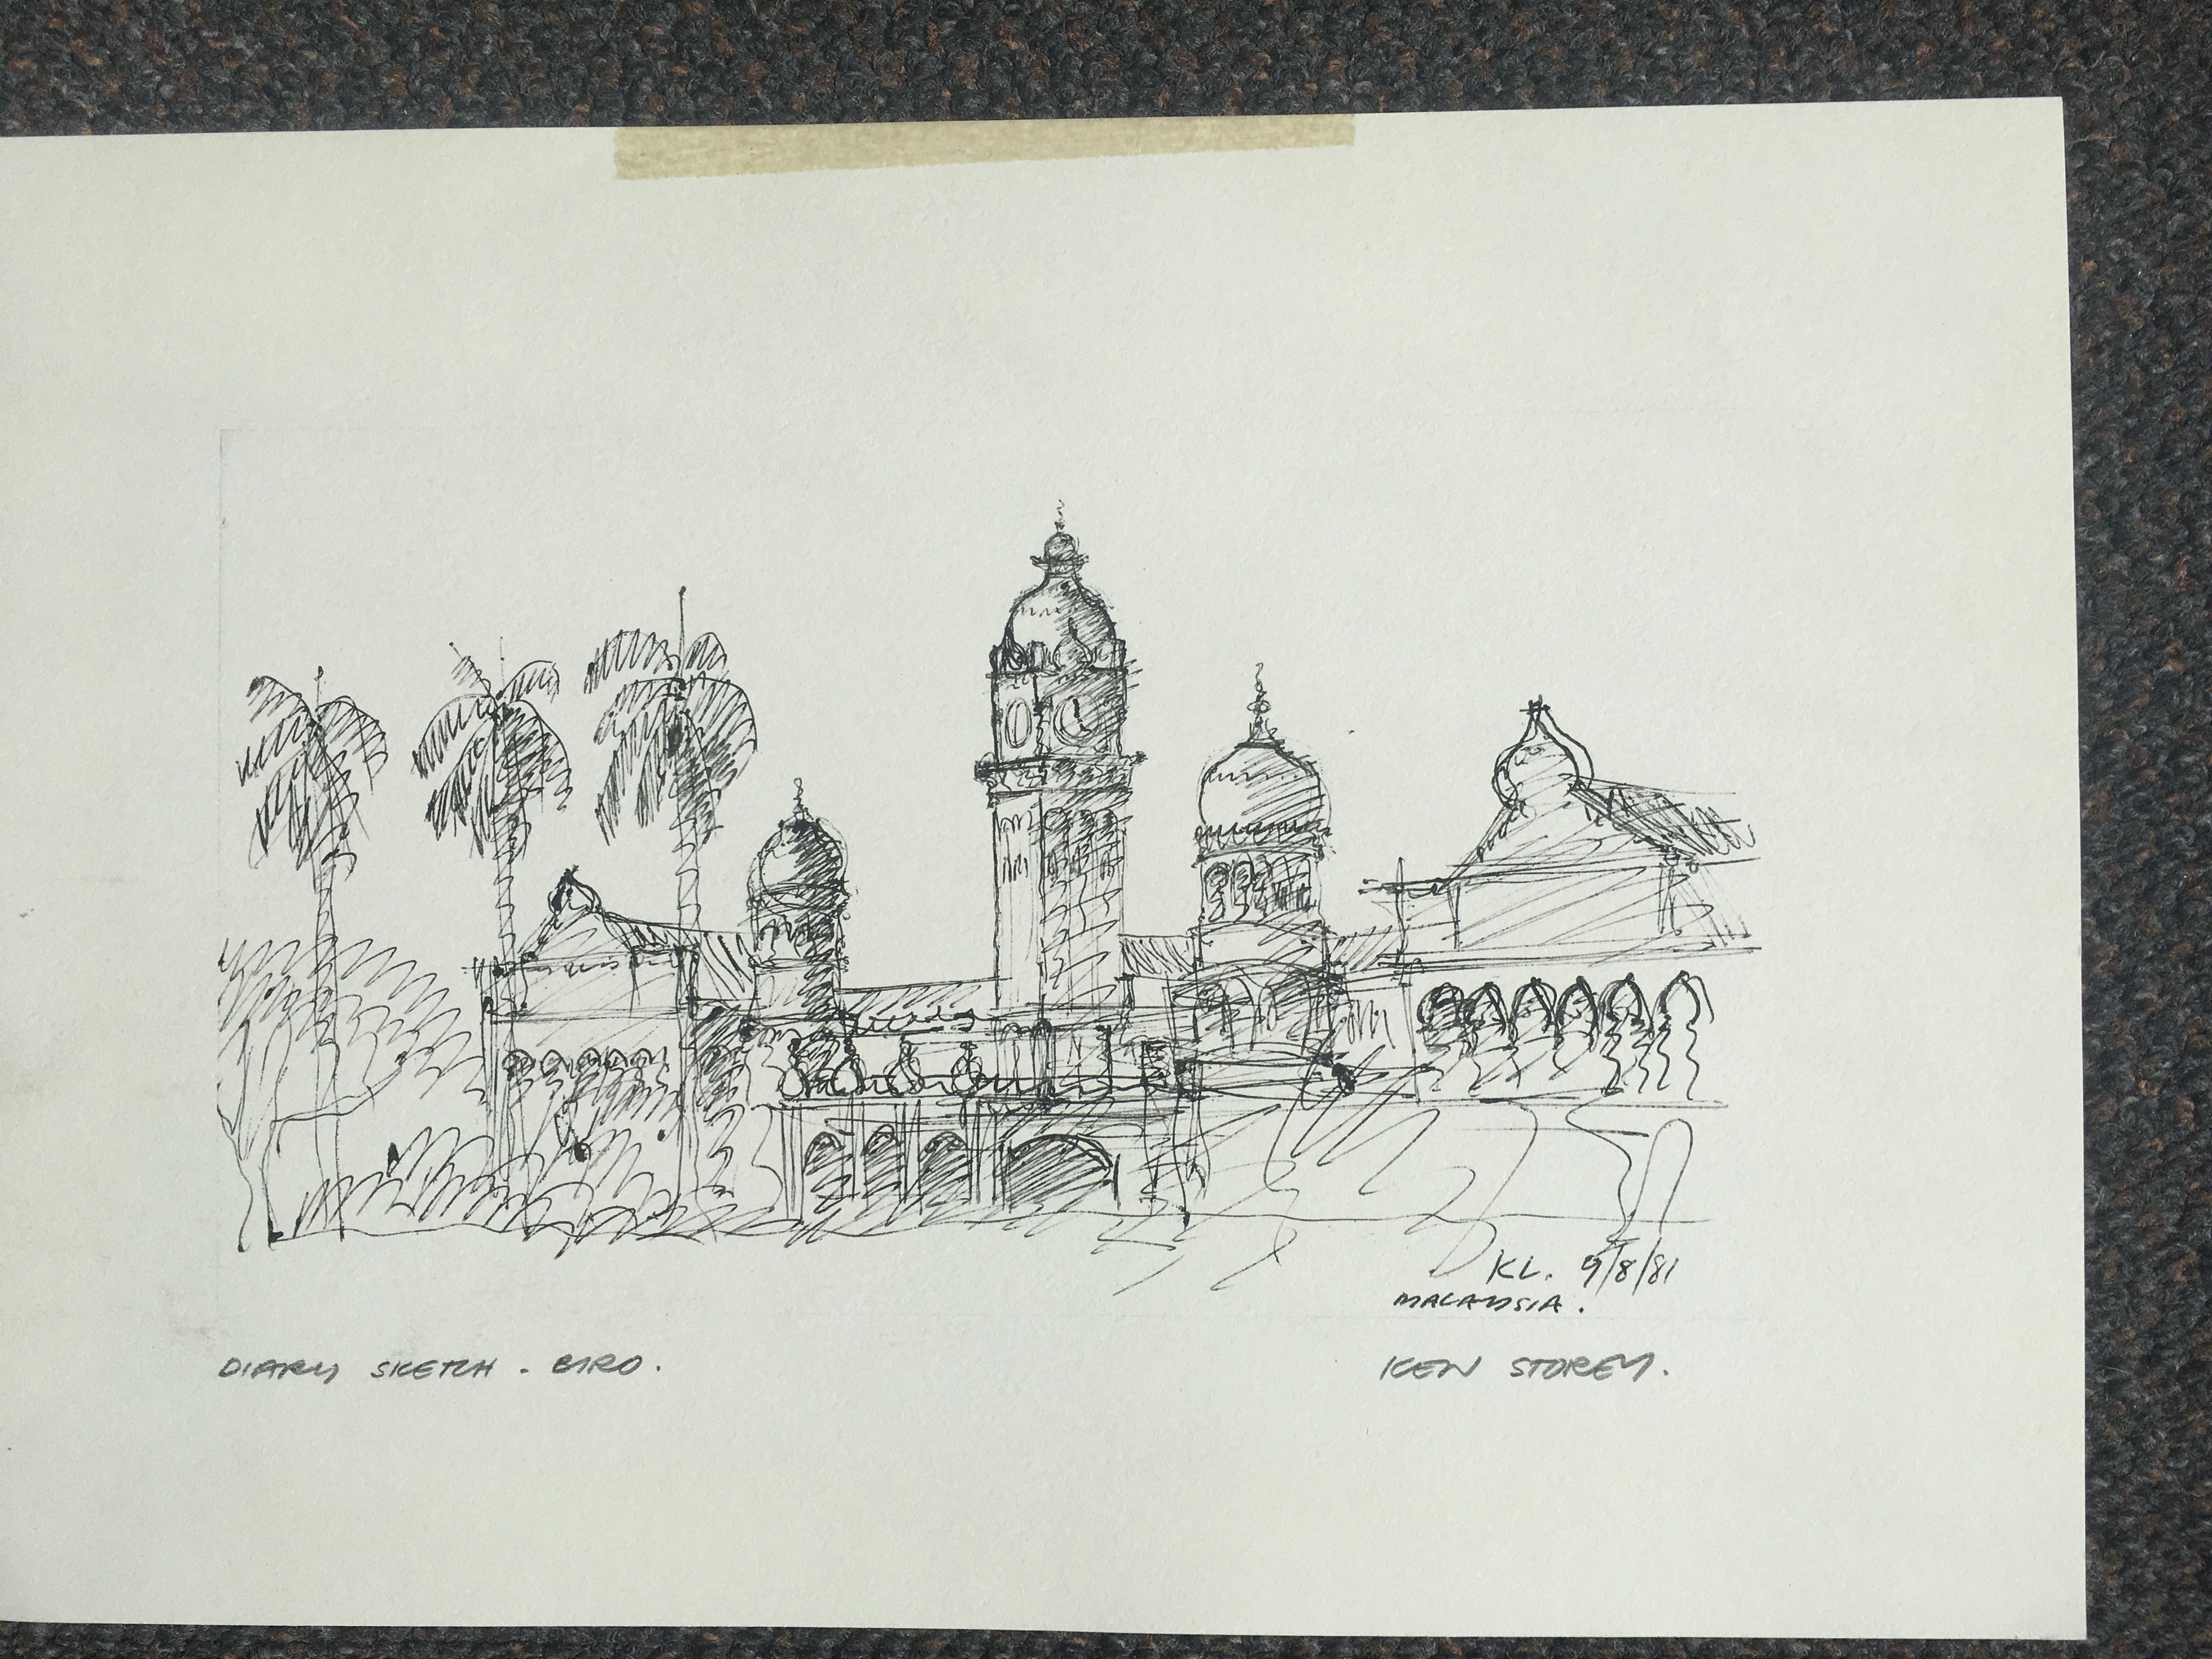 Ken Storey print, pencil signature, 8 1/2x 11 1/2